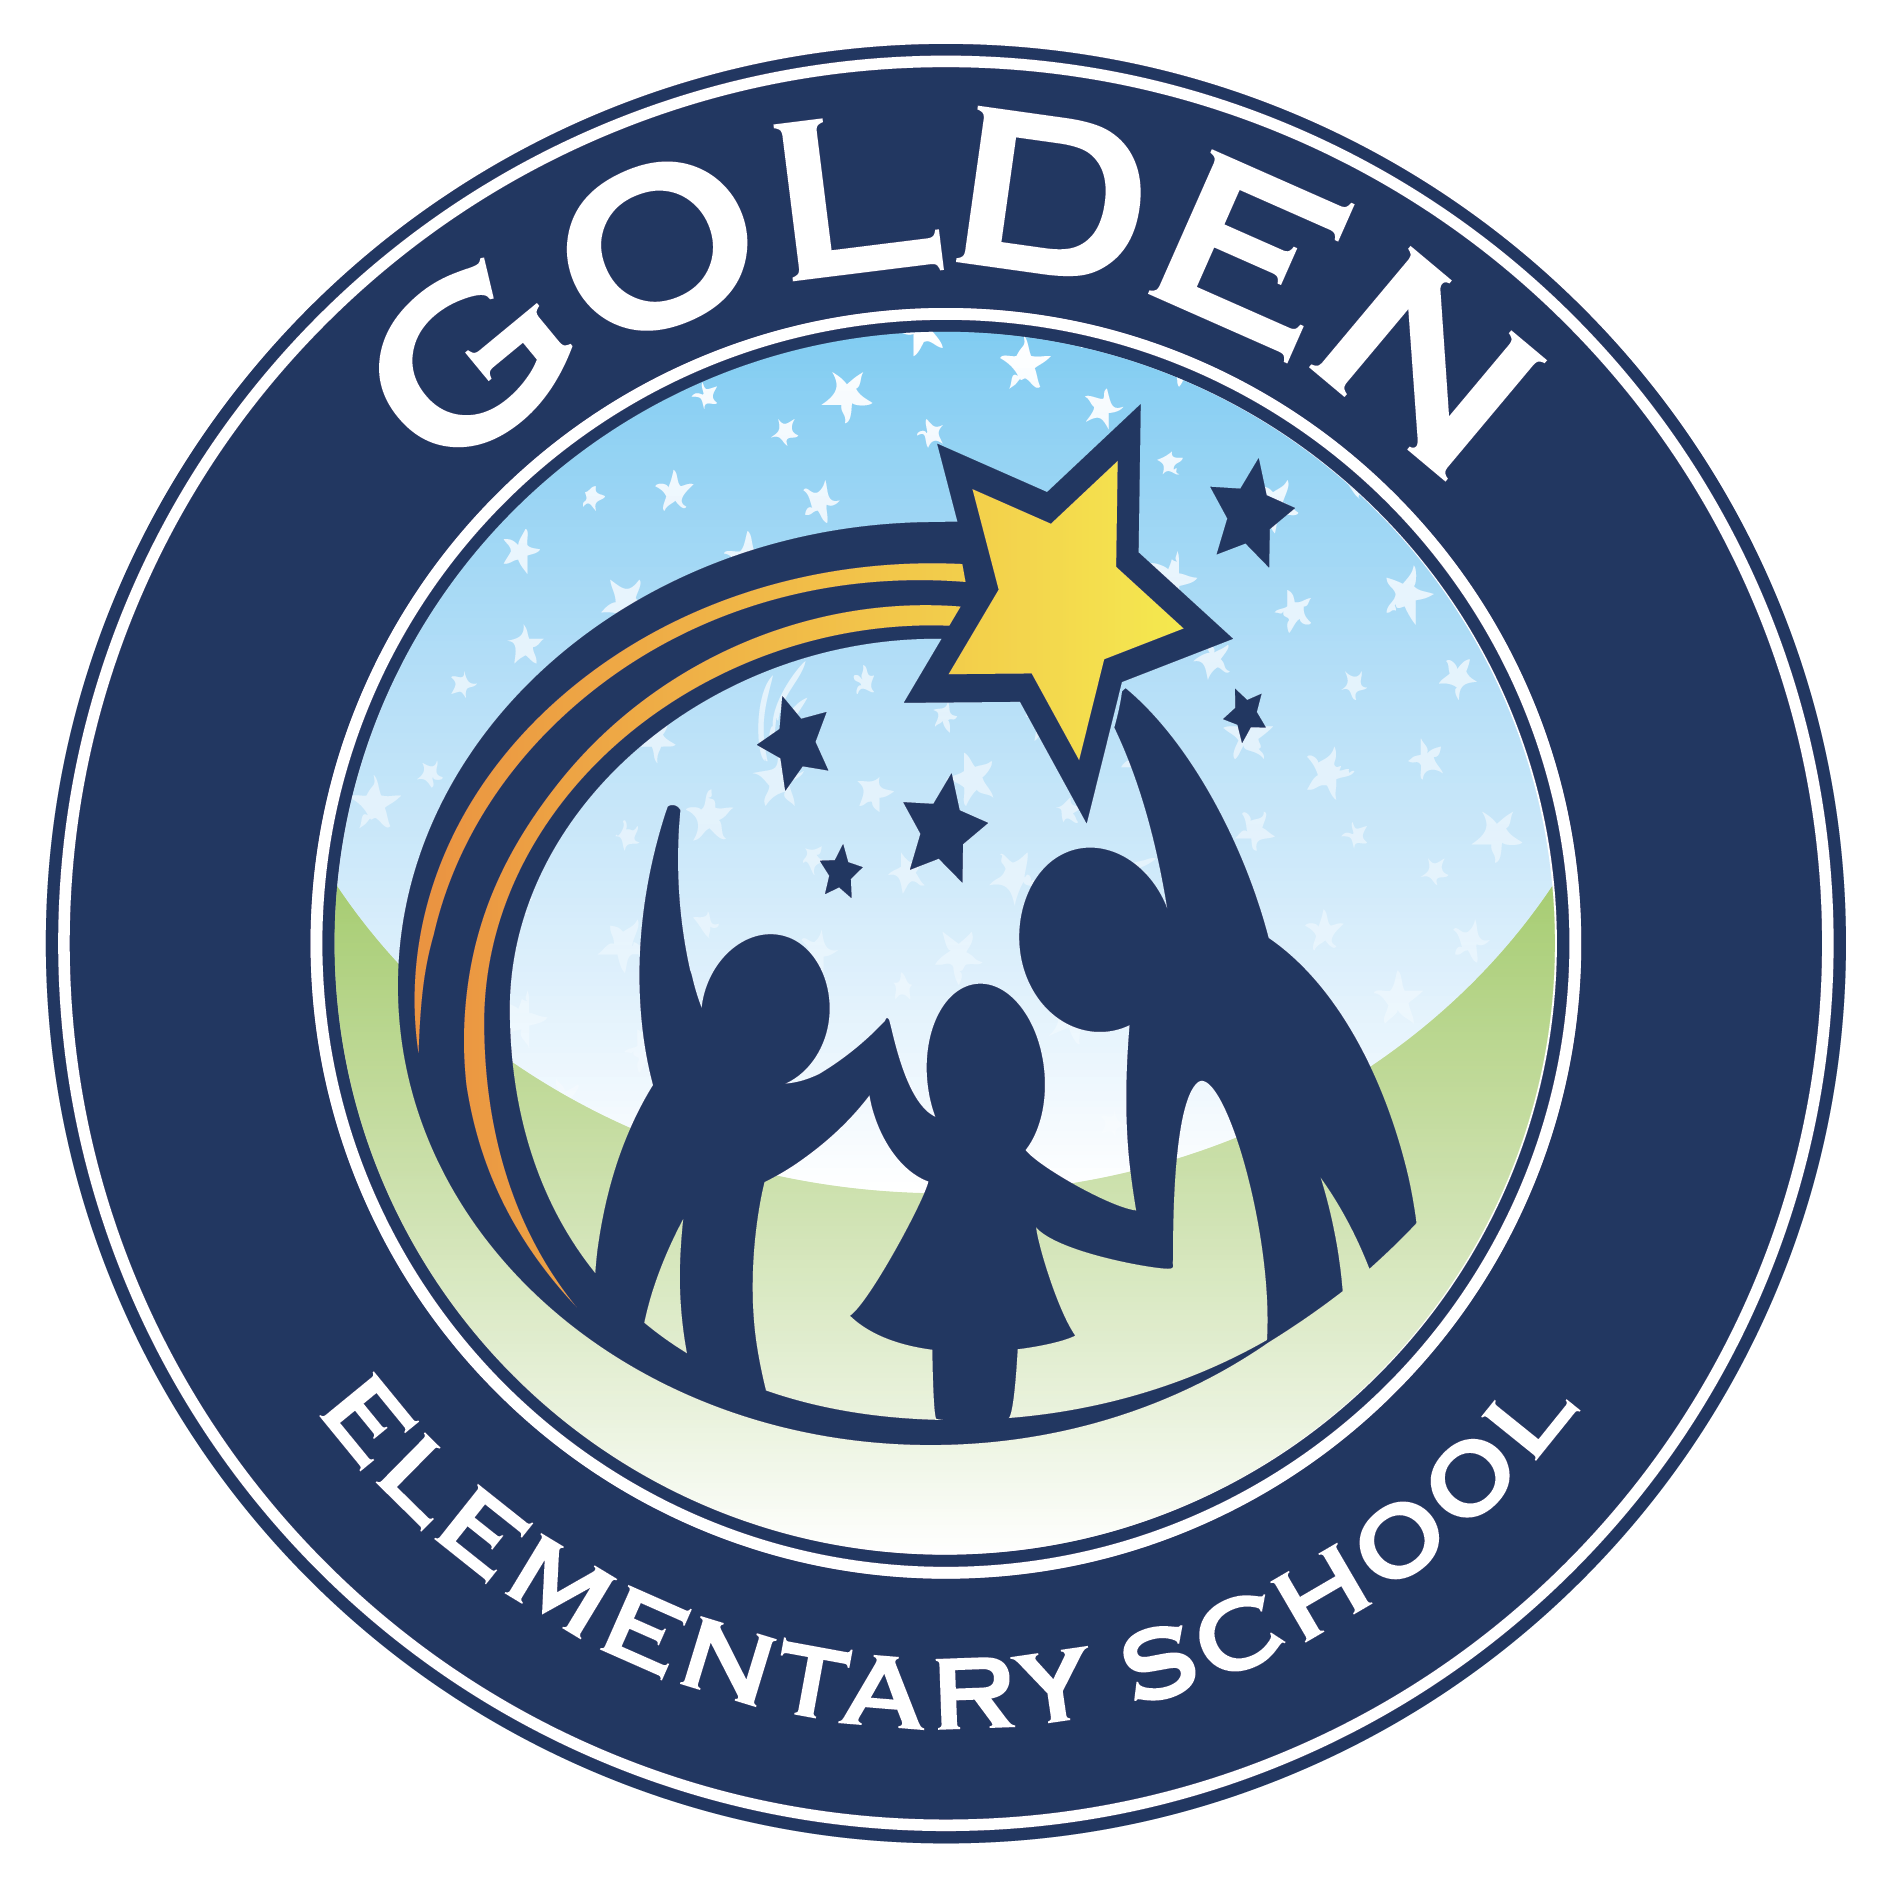 John L. Golden Logo